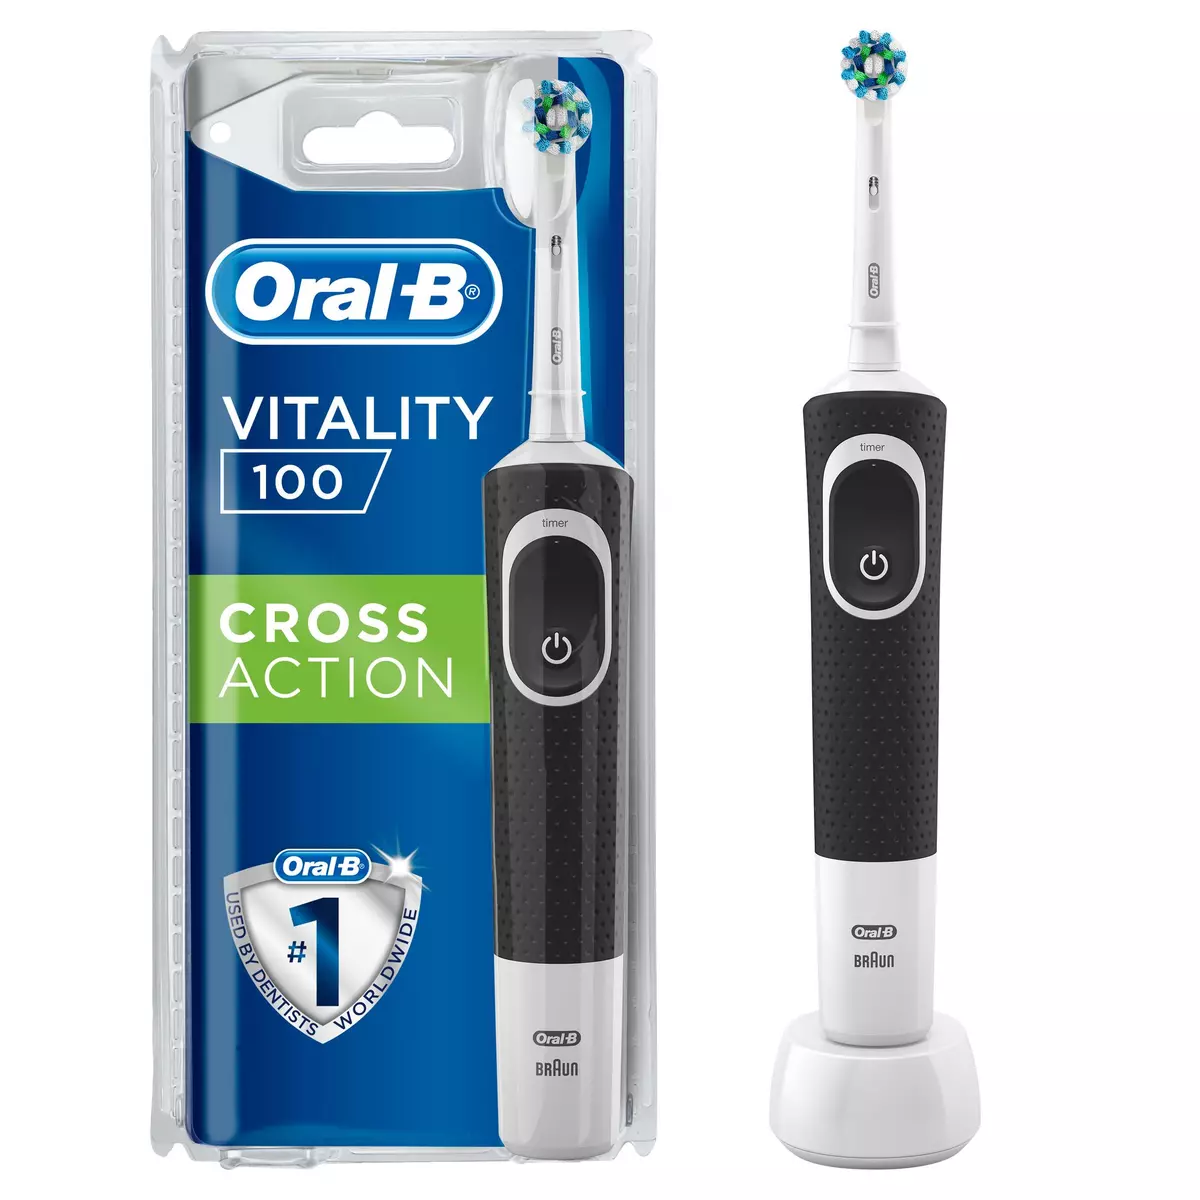 ORAL-B Brosse à dents électrique vitality 100 cross action 1 brosse